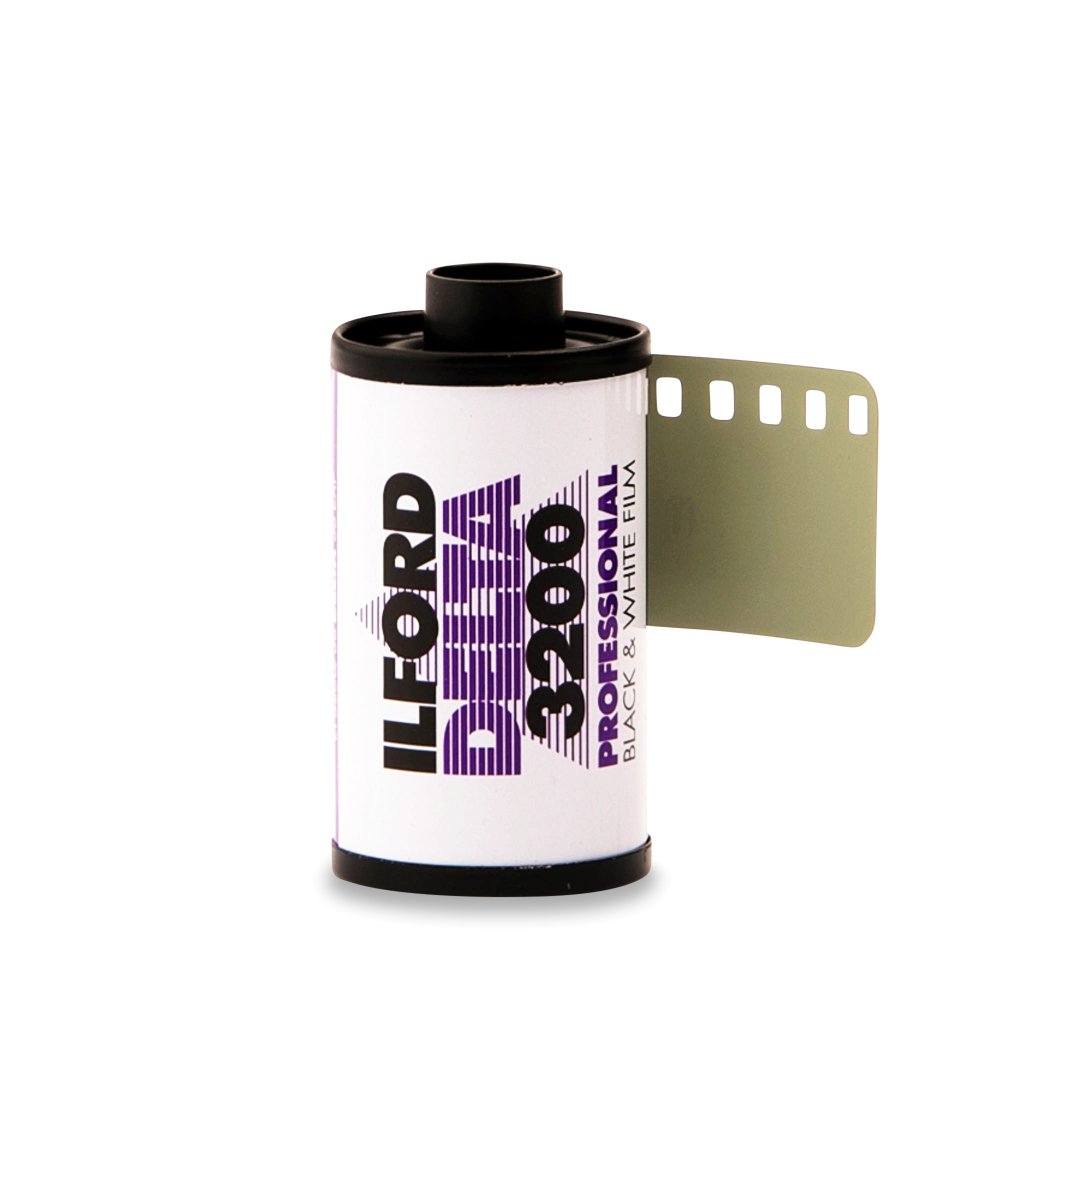 Ilford Delta 3200 - 35mm - 36 Exposure - Single Roll - Rewind Photo Lab - Ilford